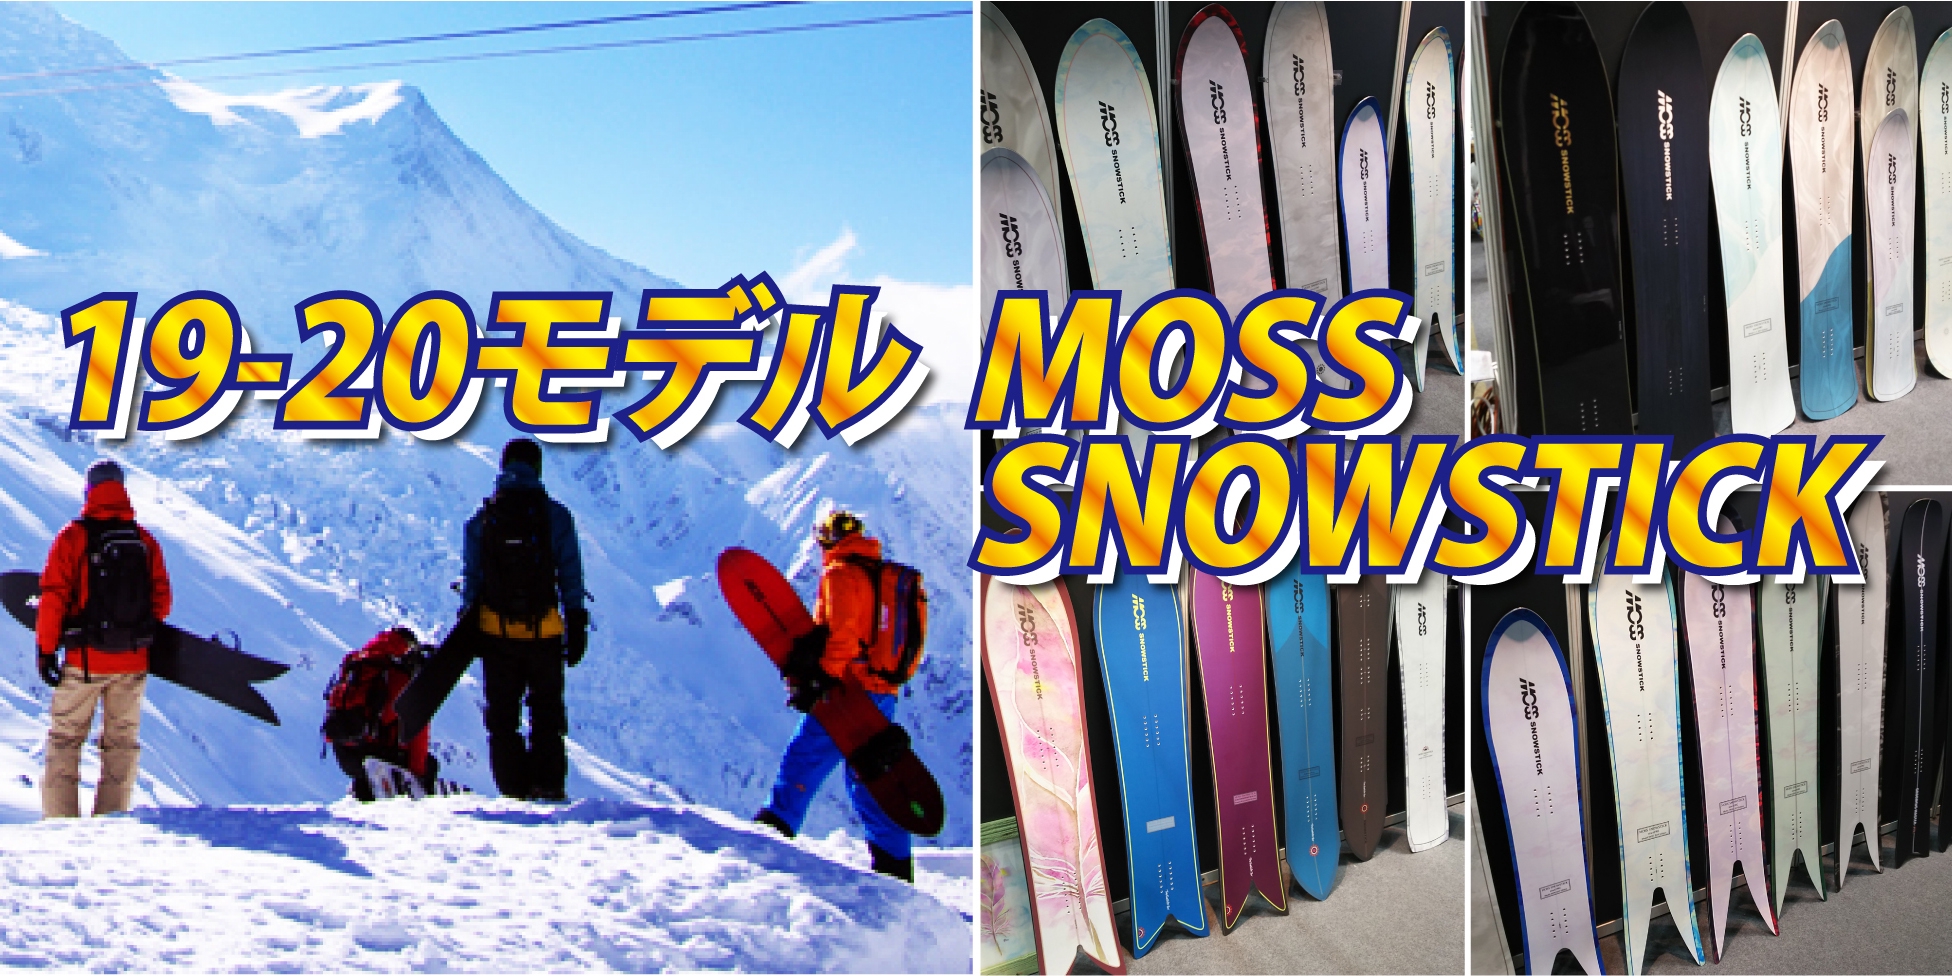 19-20 NEWモデル MOSS SNOWSTICK | 【b's east】